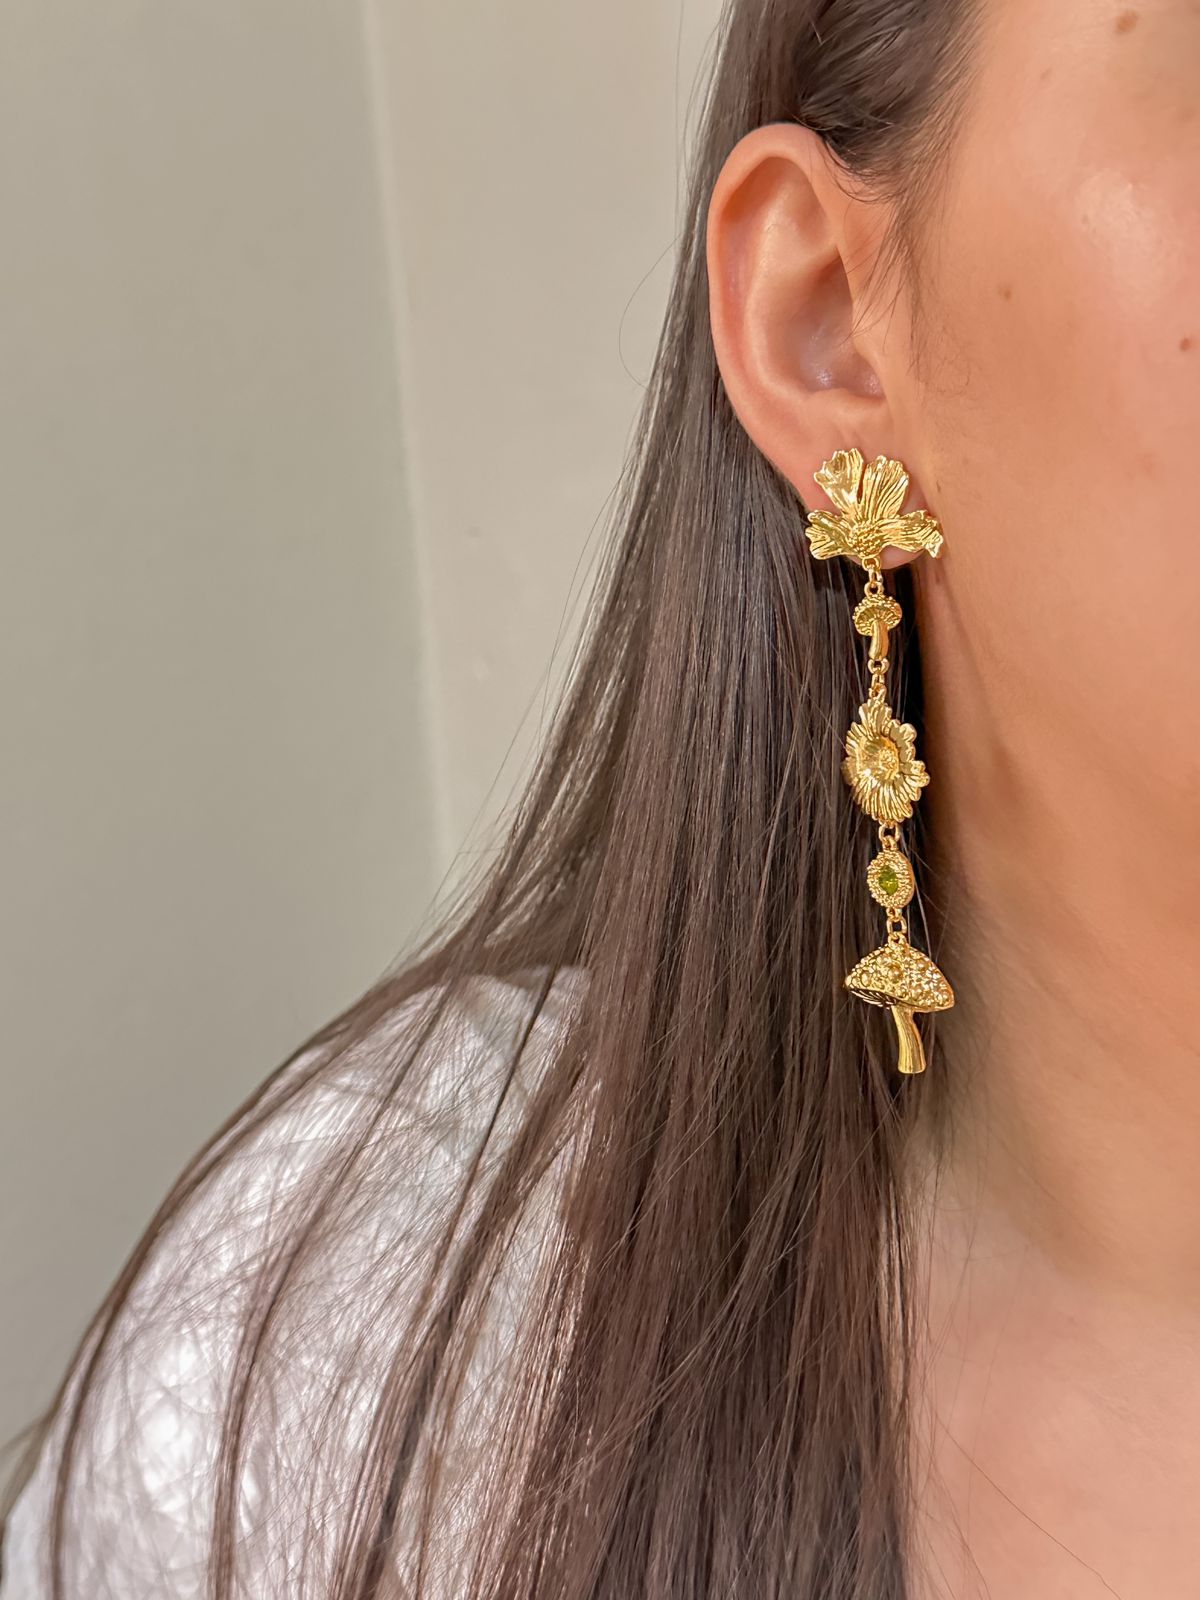 Artemisa earrings